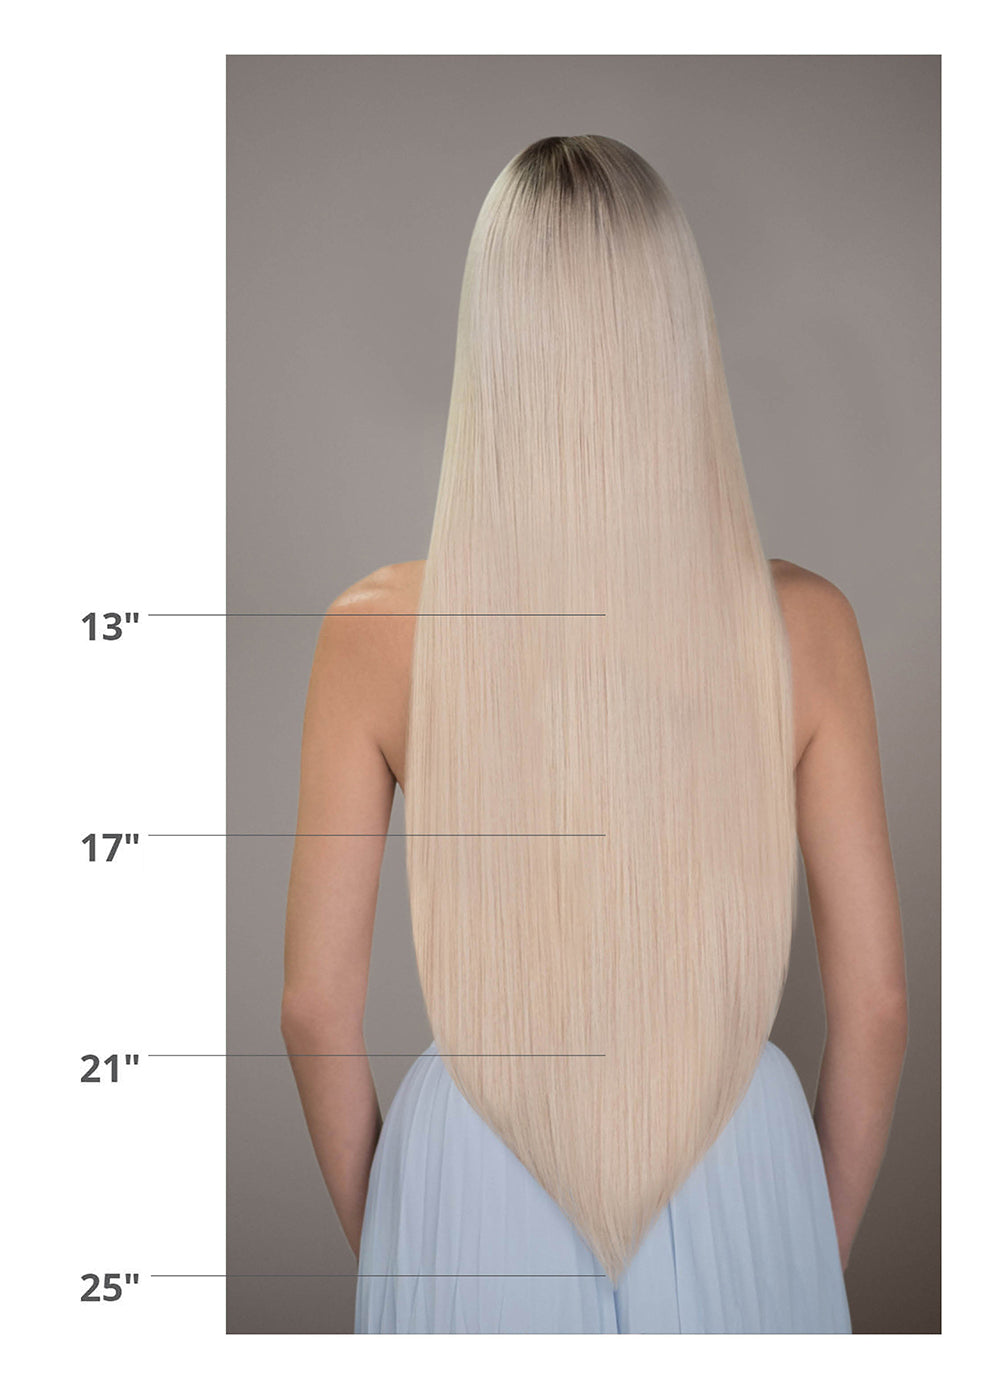 hair extension length